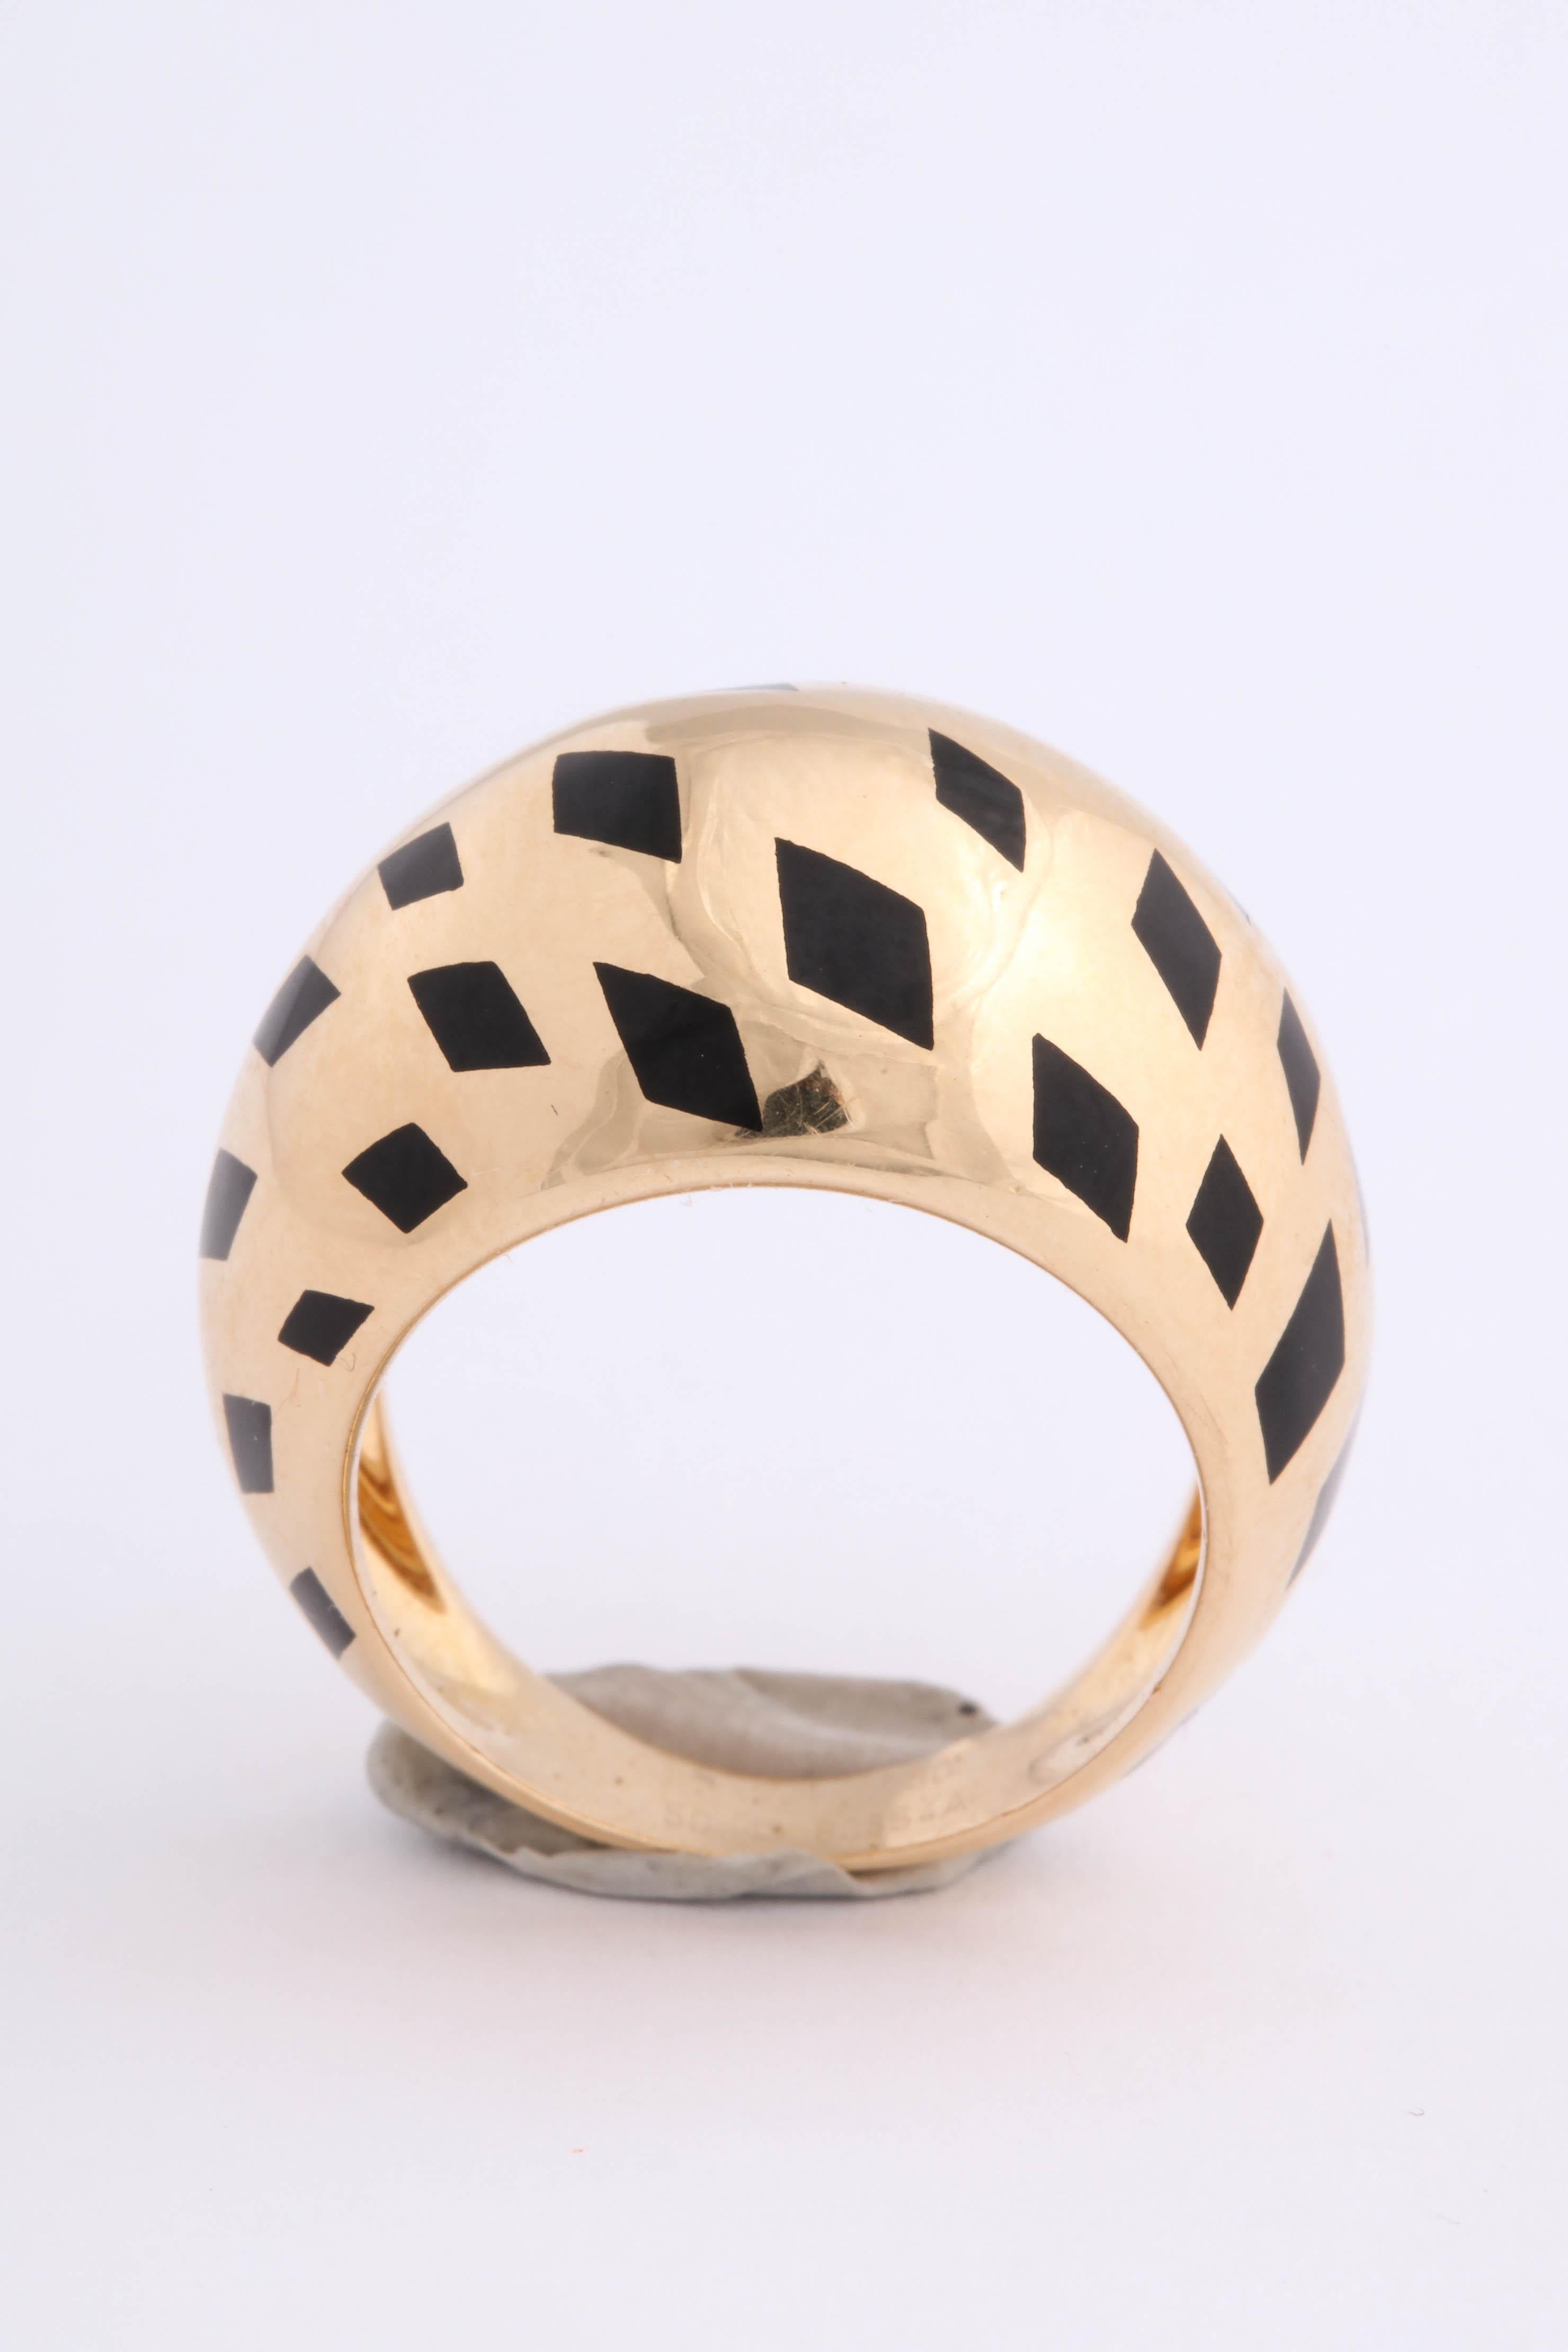 Schicker Cartier Ring für den kleinen Finger.  Hochglanzpolierte Kuppel mit schwarzem Emaille-Leopardenzeichen auf einer Diagonale.  Hergestellt in Frankreich mit französischen Punzen. Größe 5,25.  Sehr schick - Ooh la la!